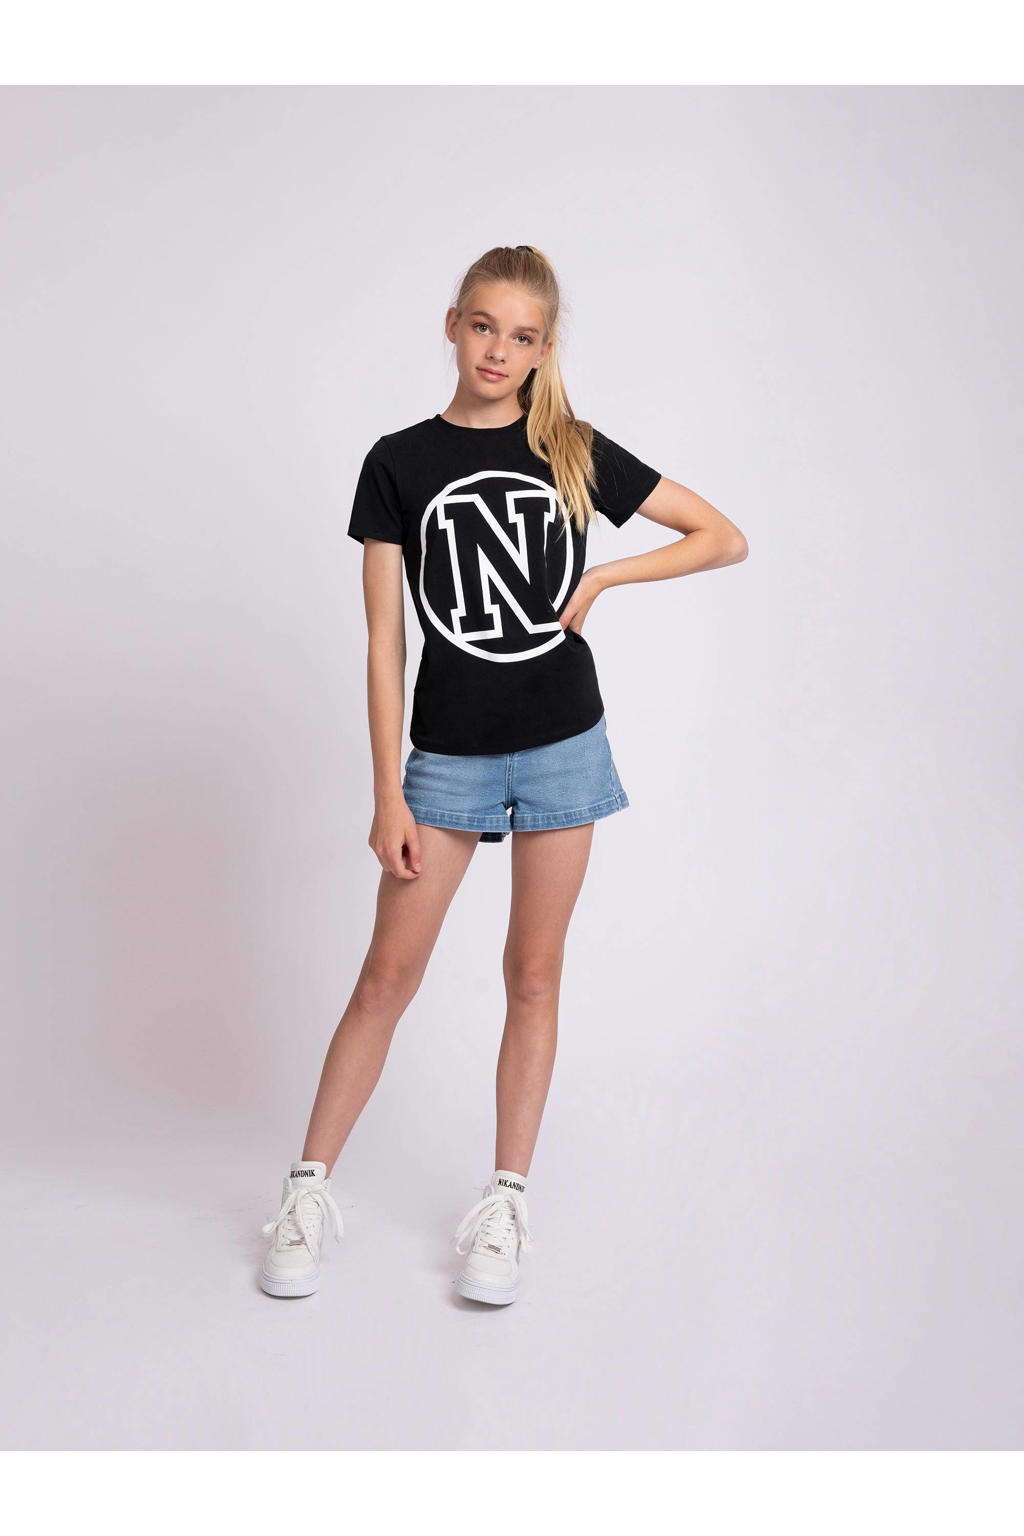 NIK&NIK T-shirt College N met logo zwart